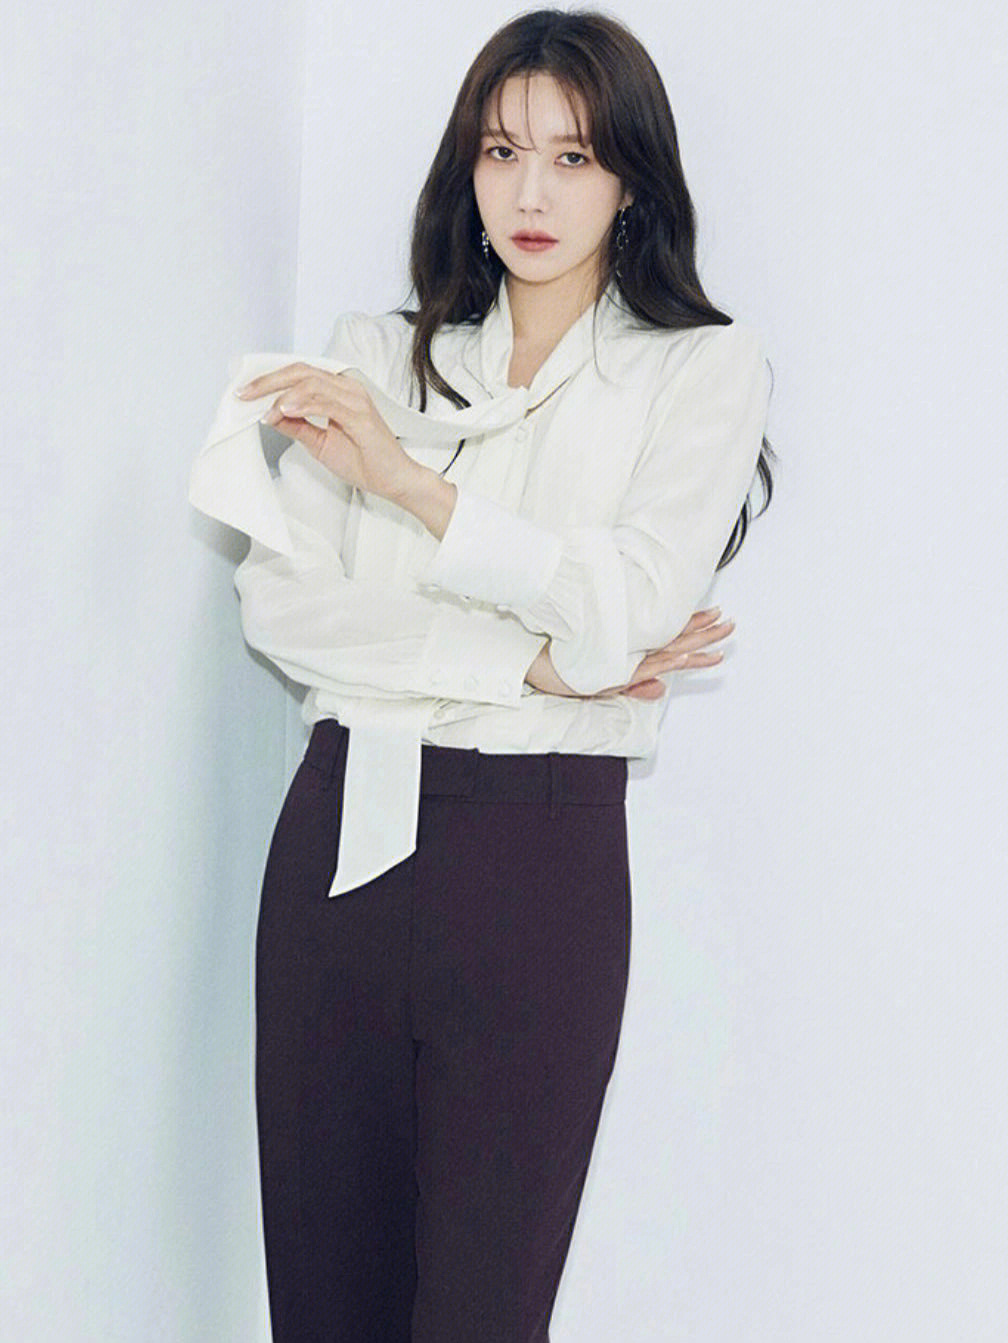 智雅韩国女演员图片